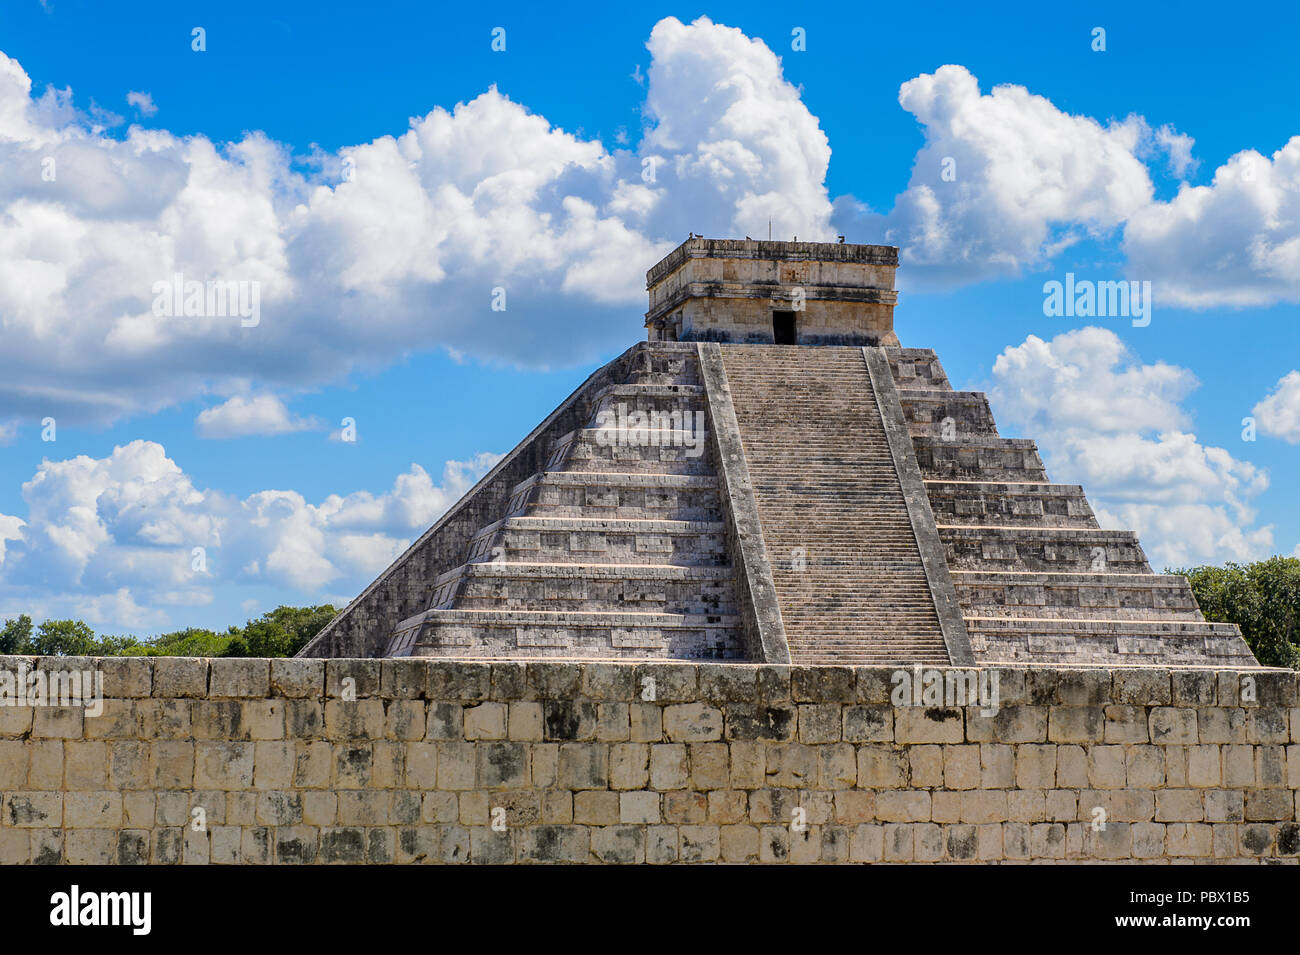 El Castillo (Temple de Kukulcan), une étape mésoaméricain-pyramide, Chichen Itza. C'était une grande ville précolombienne construite par les Mayas de la termin Banque D'Images